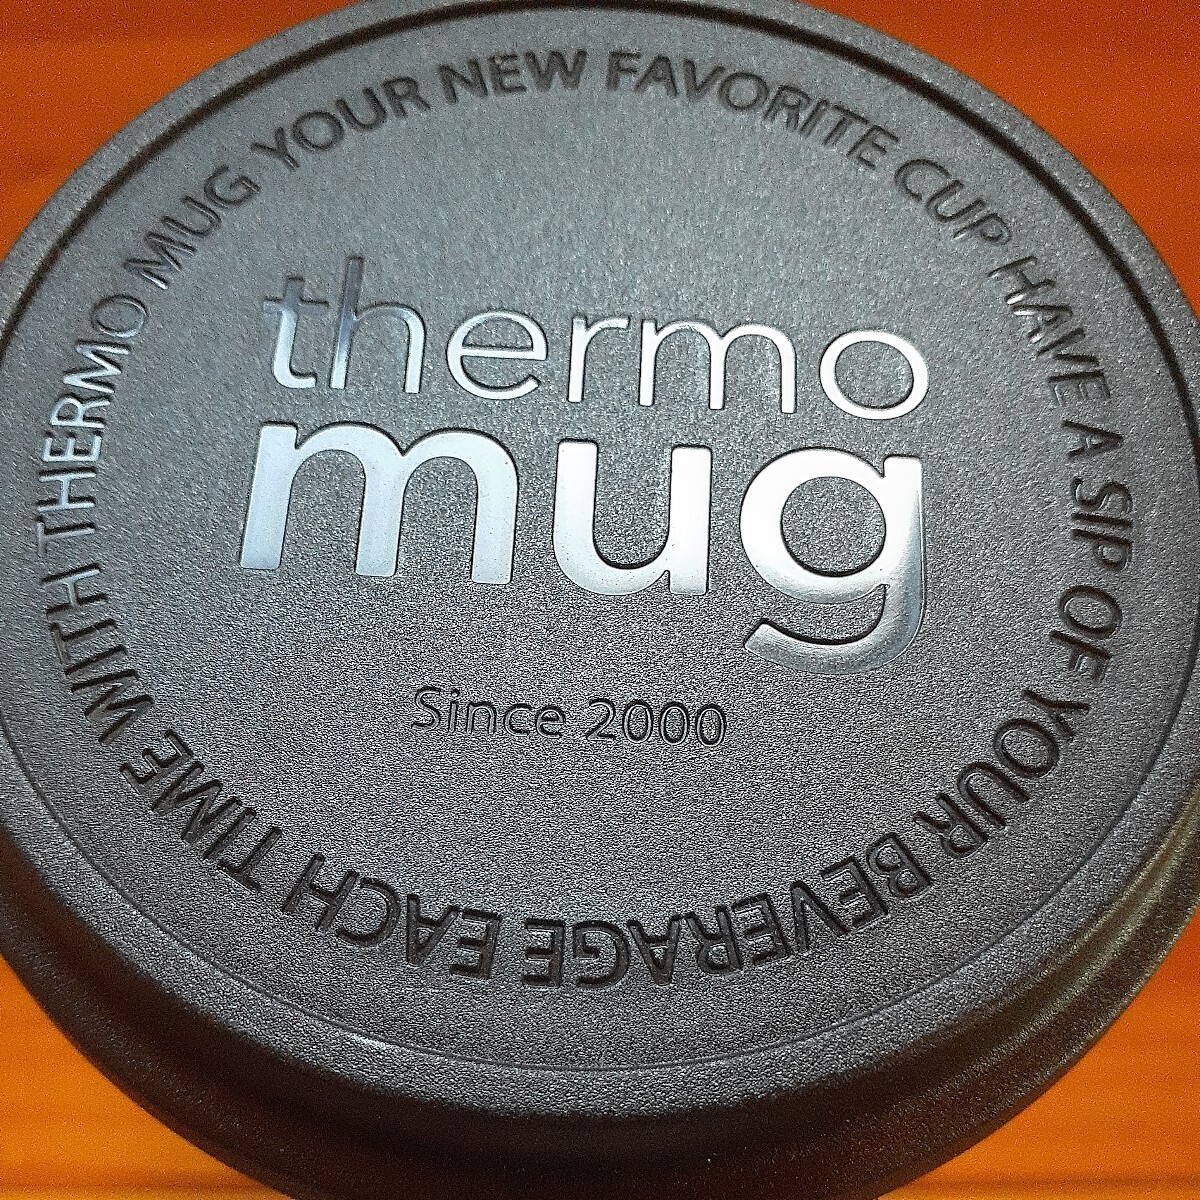  unused Afternoon Tea Afternoon Tea thermo mug Thermos mug tumbler 0.3L postage 520 jpy 